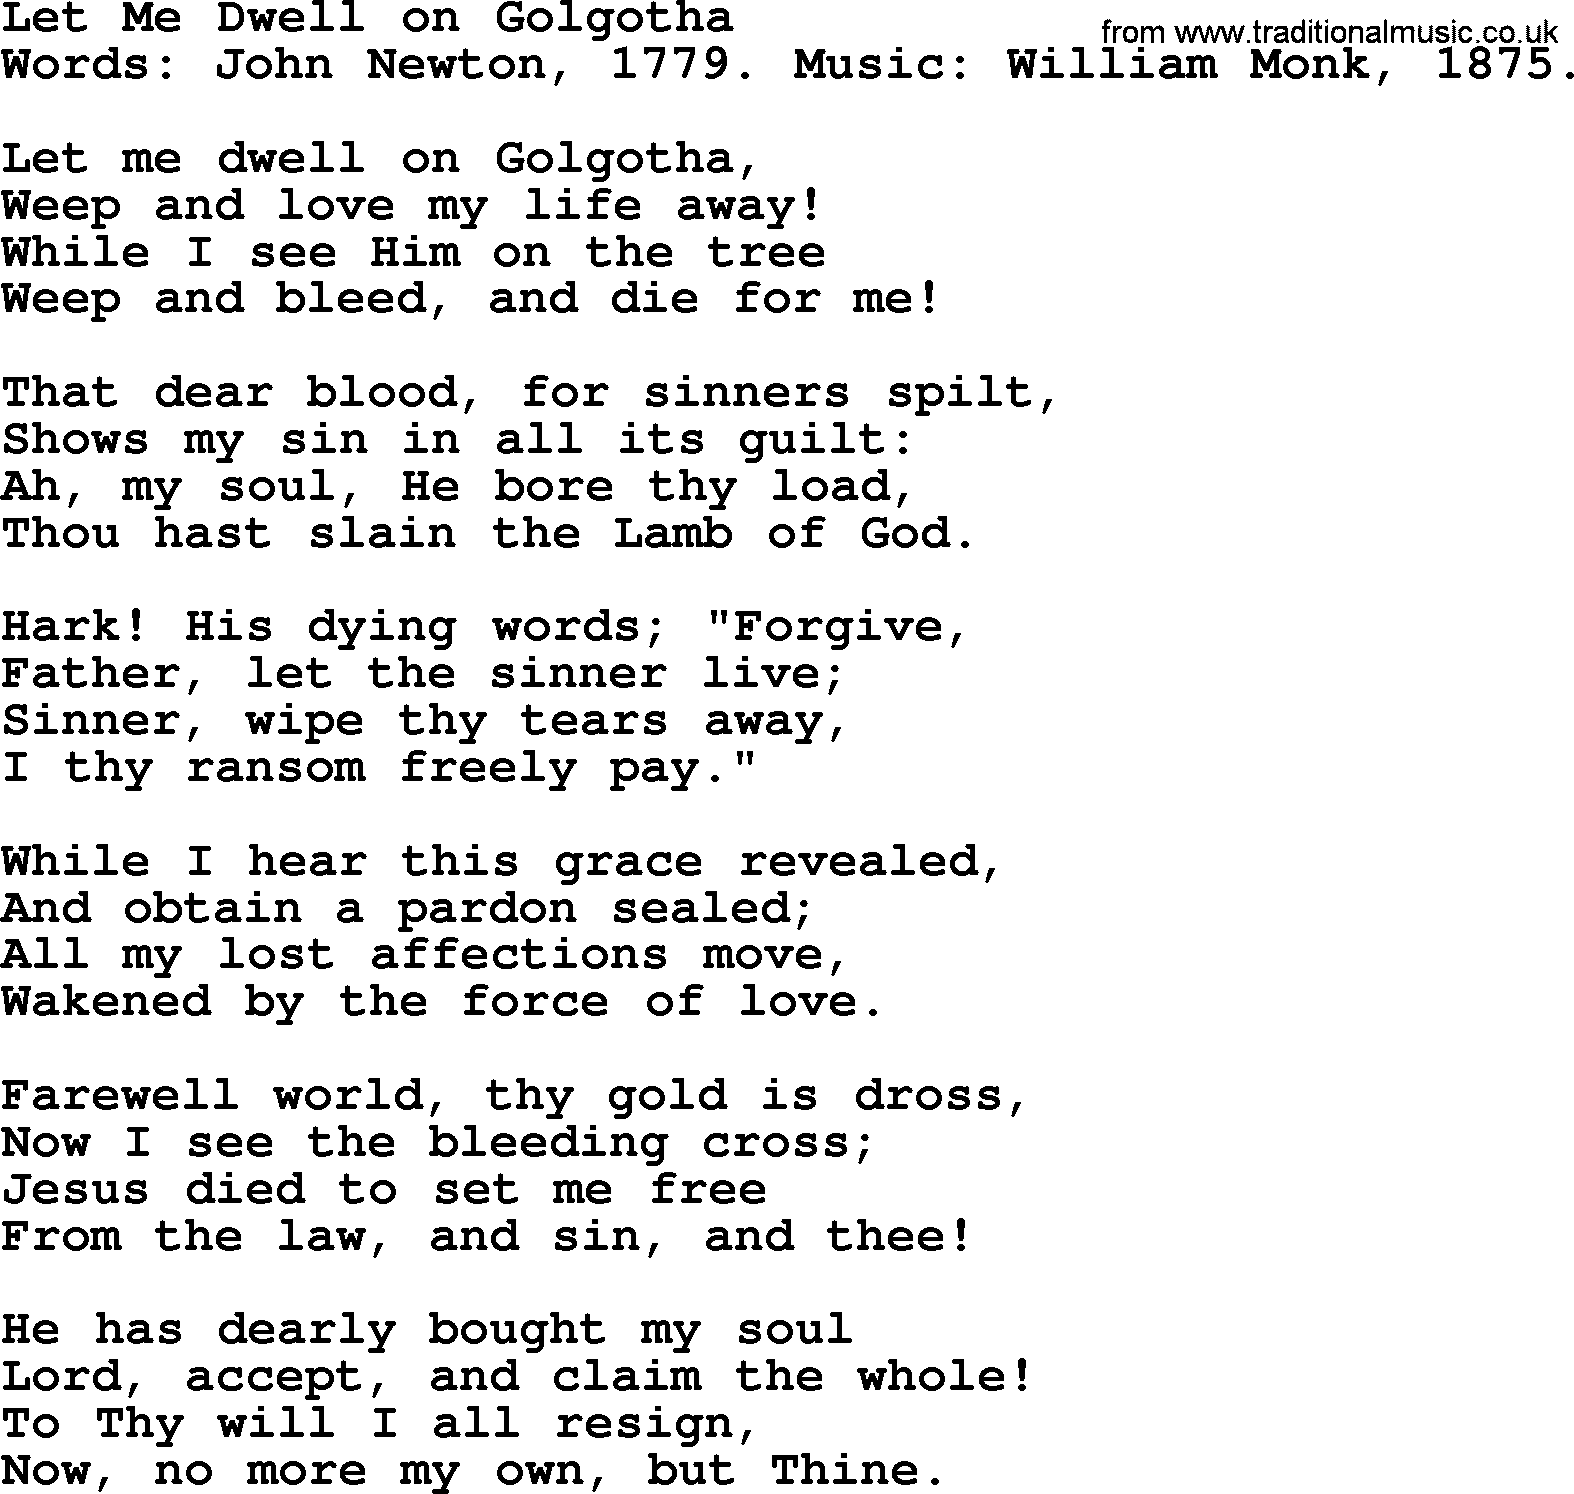 John Newton hymn: Let Me Dwell On Golgotha, lyrics